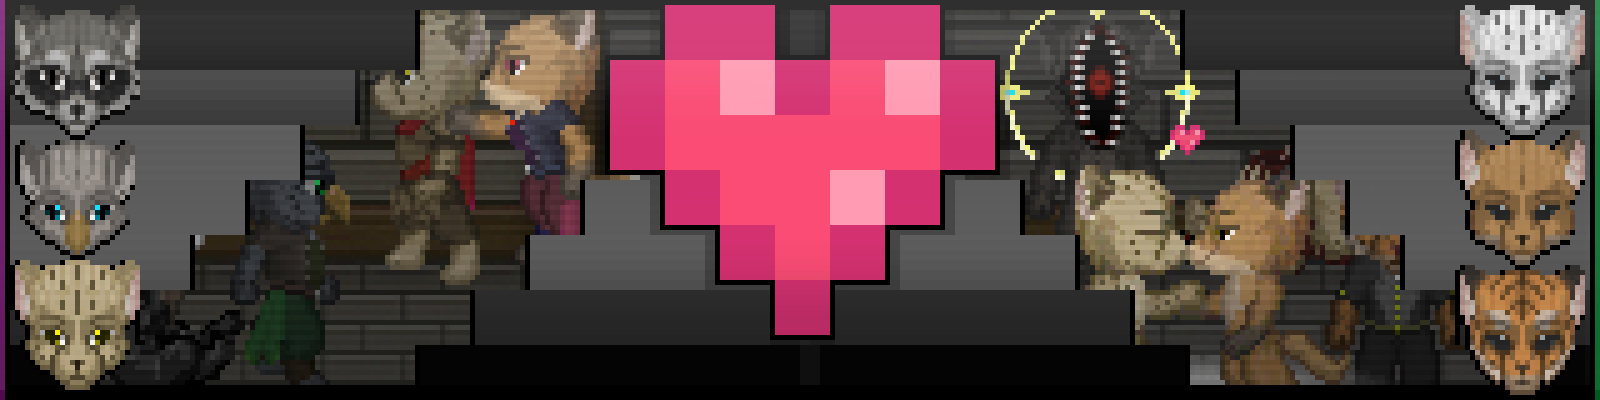 Pixel hearts Tile set RPG maker